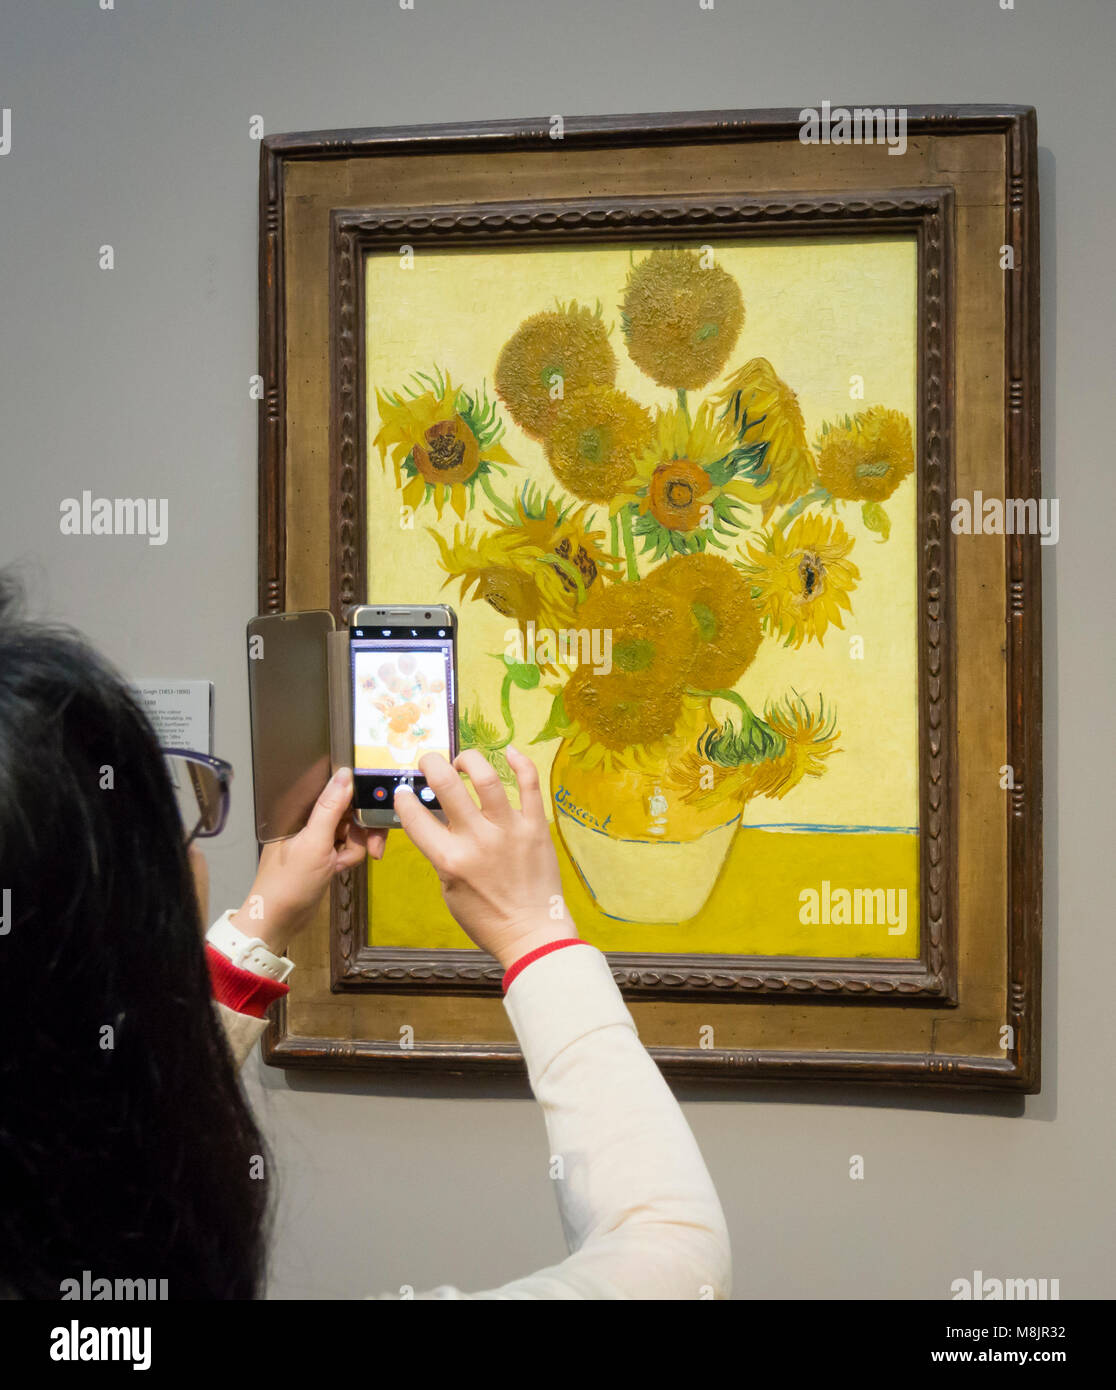 Londres, UK - 1 Sep 2017 : Un visiteur de la National Gallery de Londres est à l'aide de son smartphone pour prendre des photos de Vincent van Gogh peinture à l'huile "unflowers', l'une des plus célèbres pièces du musée. Banque D'Images